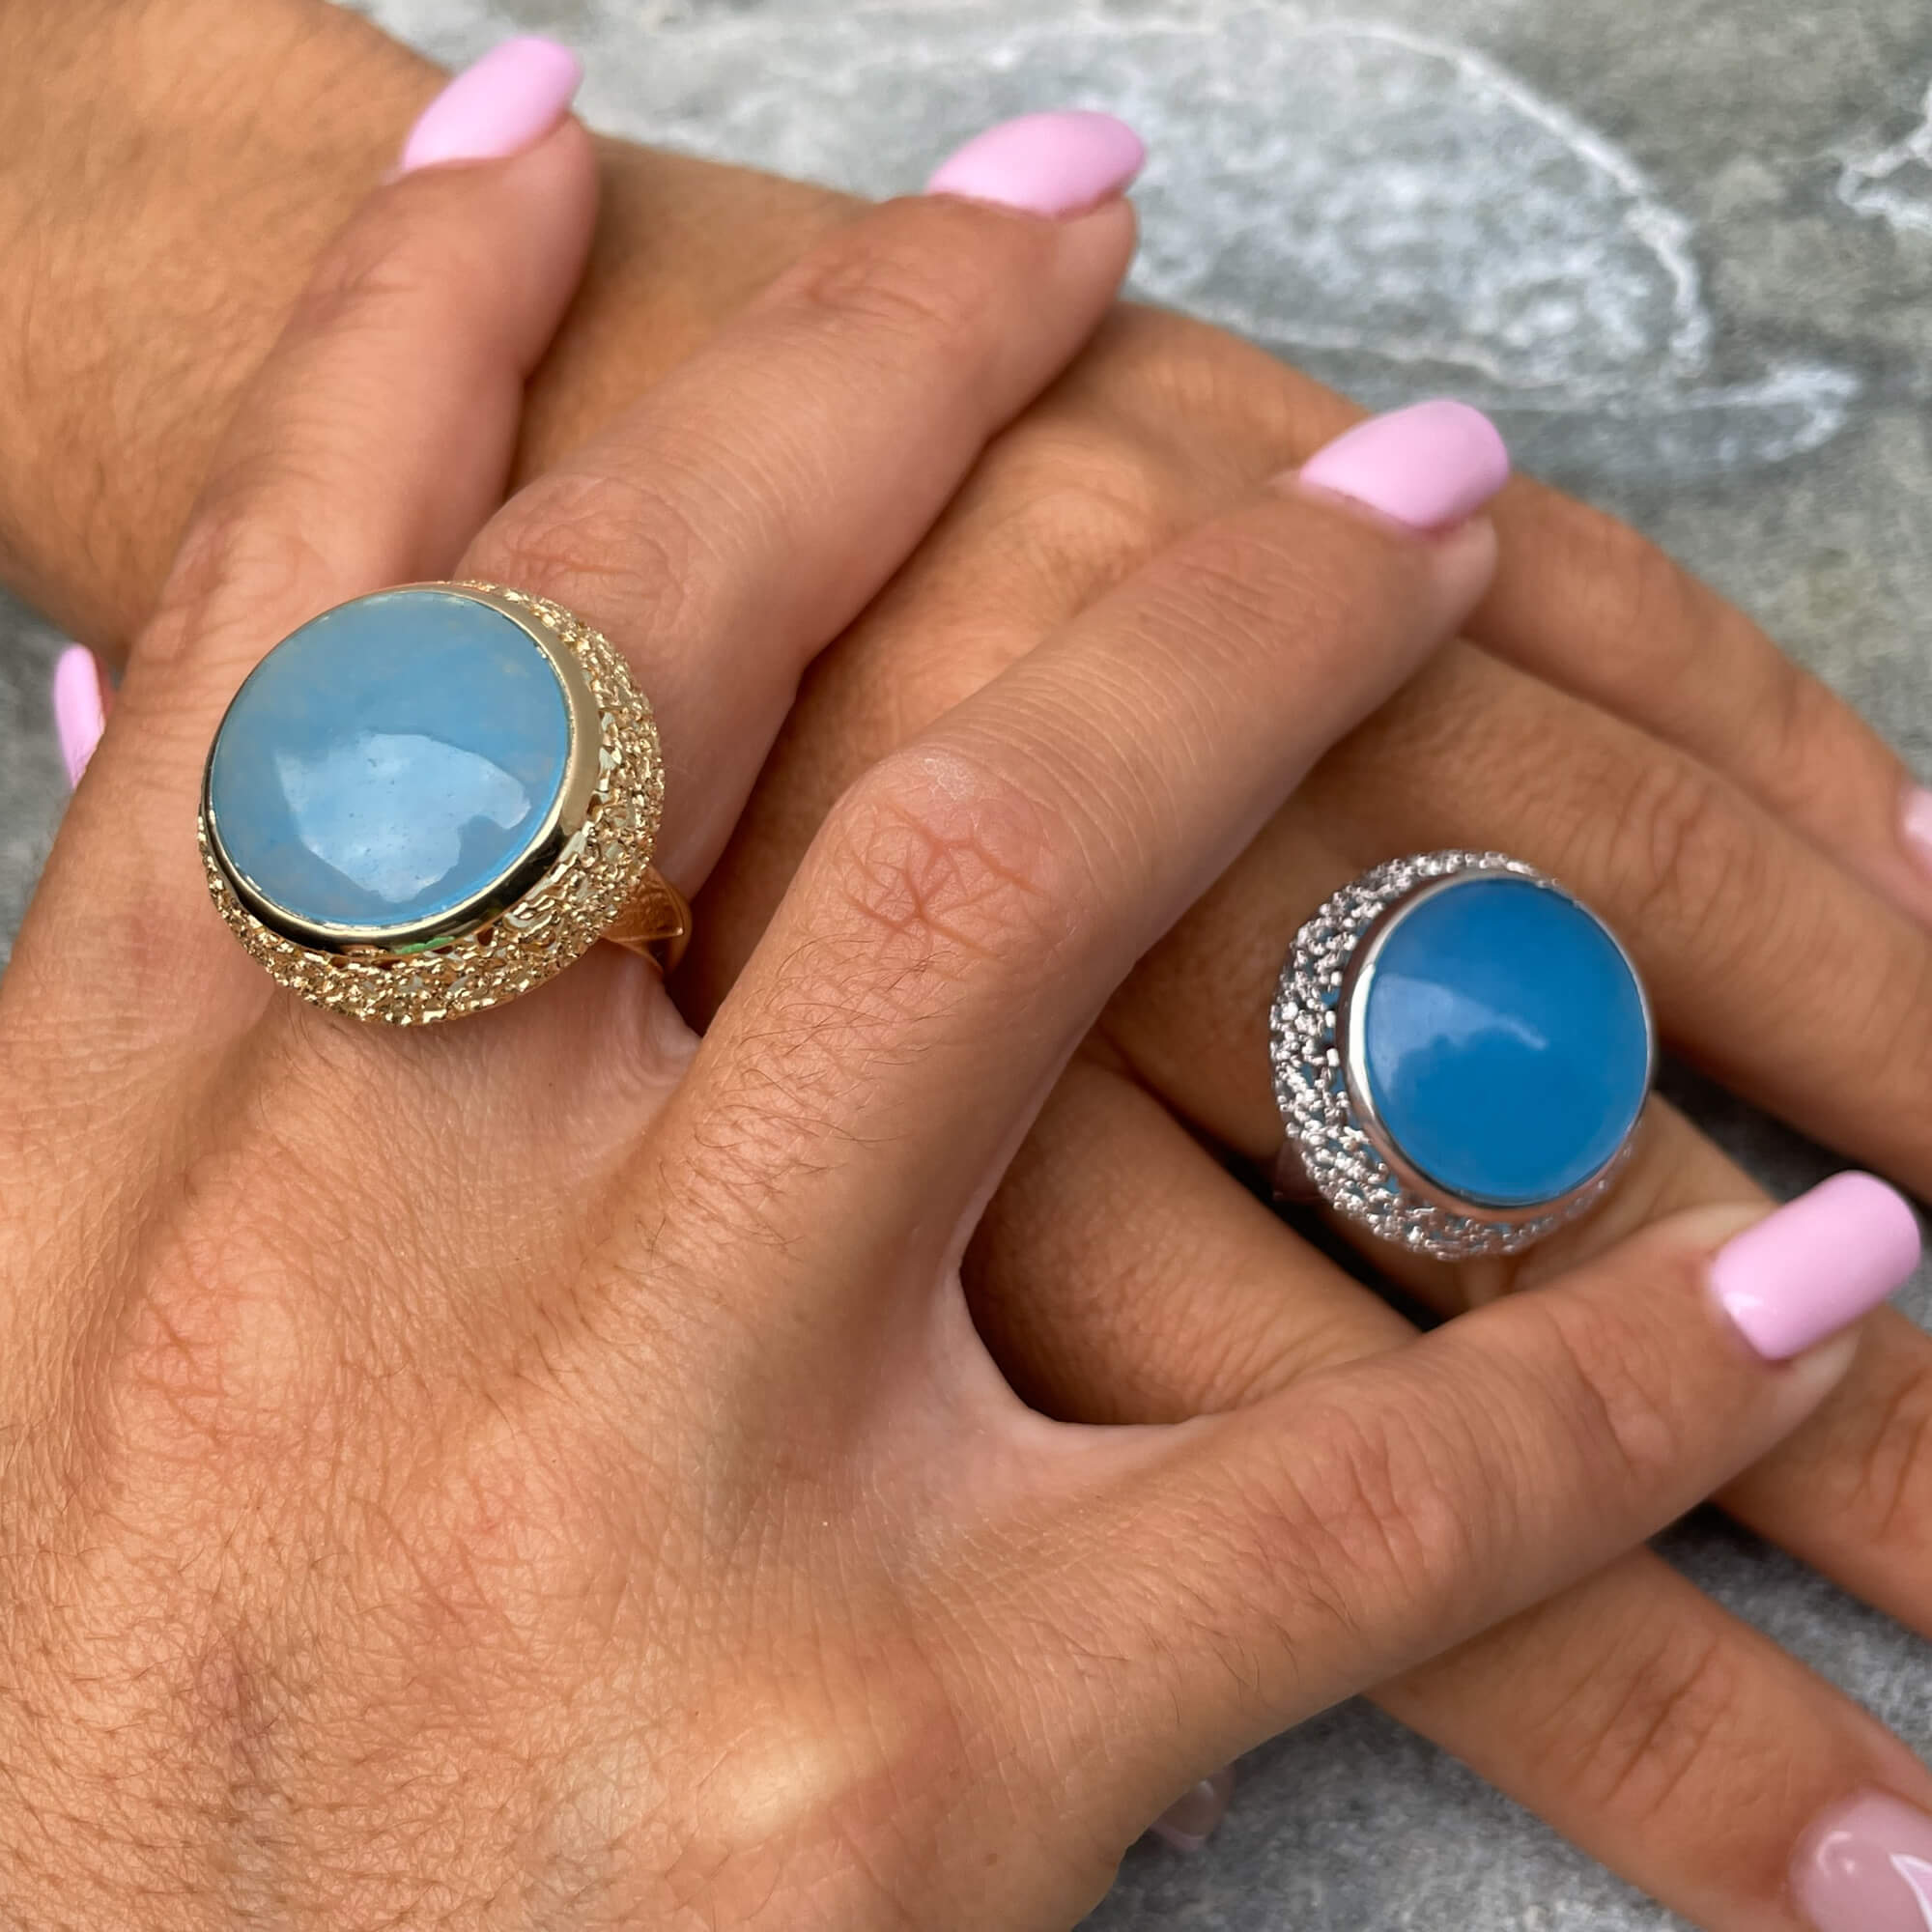 Edited gilt ring with a blue quartz stone